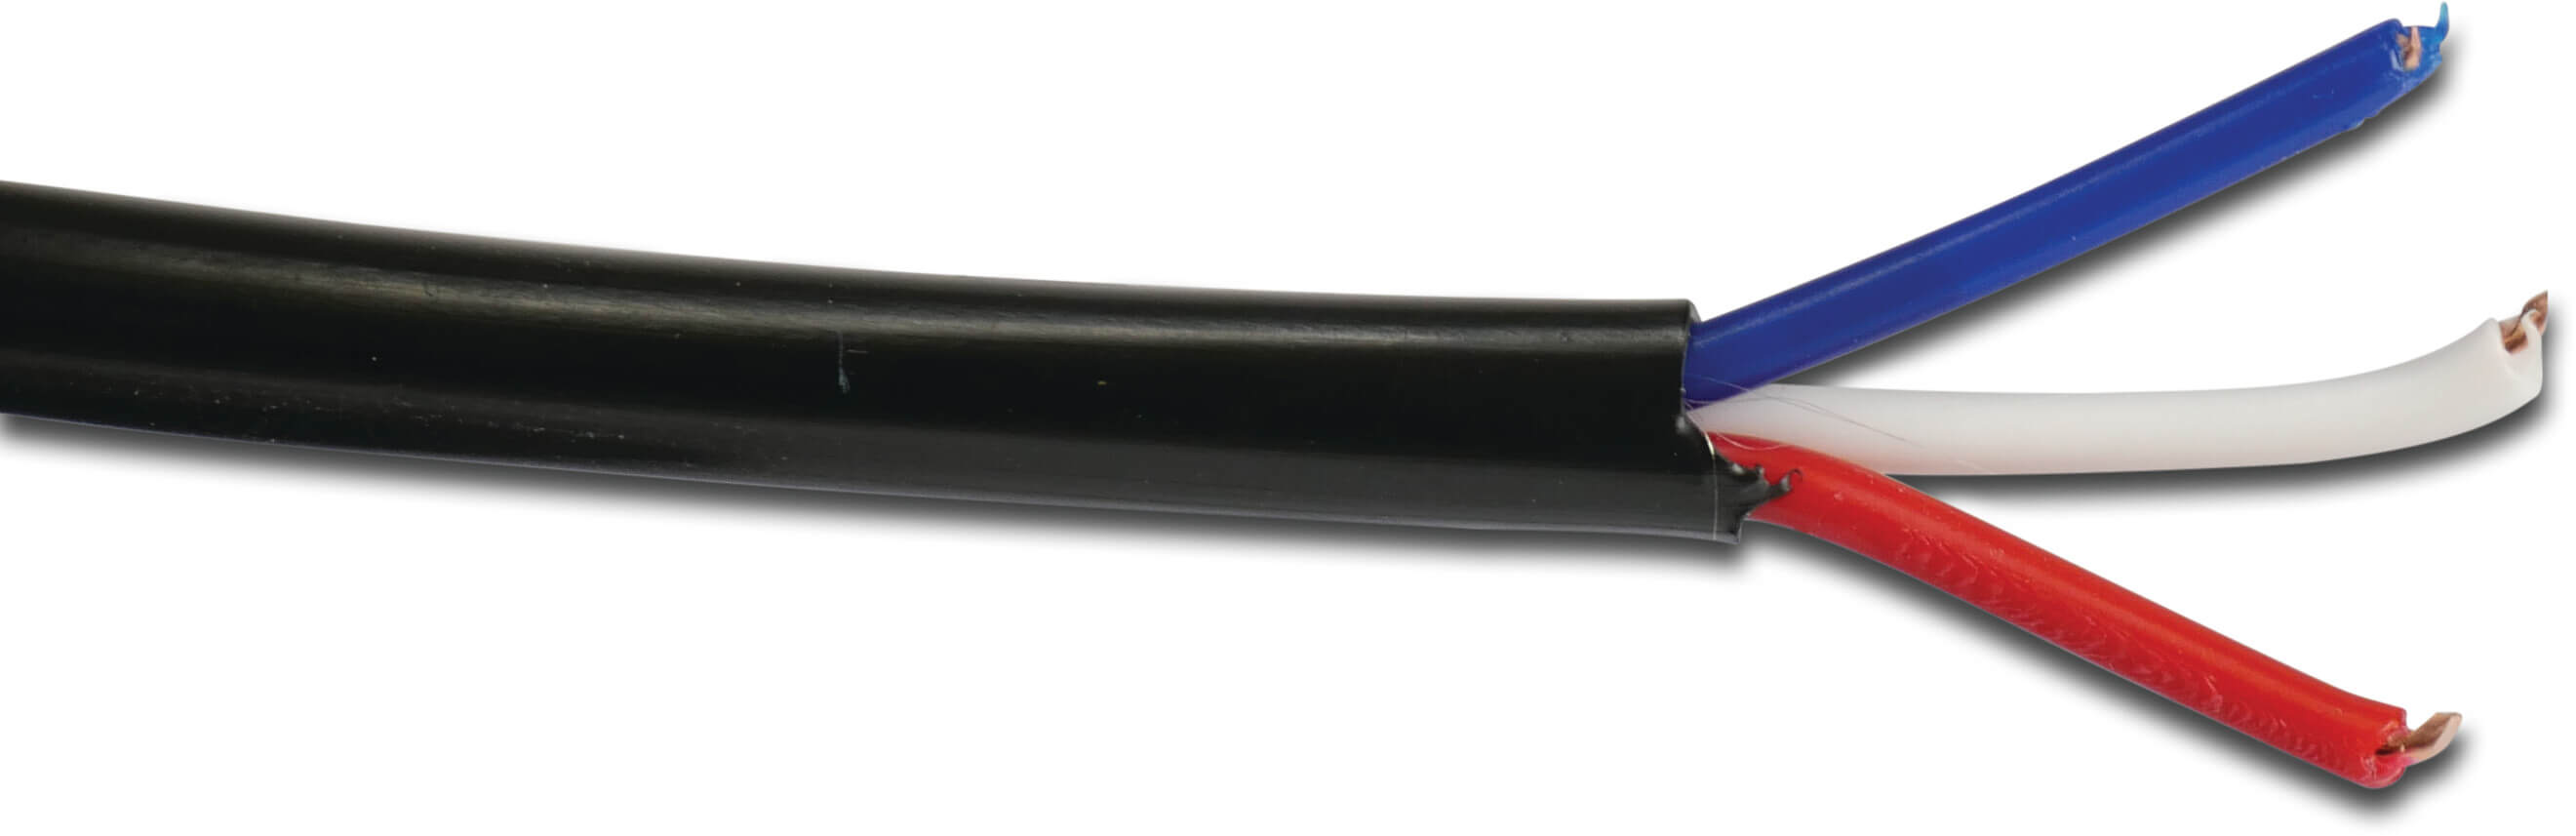 Cable électrique cuivre noir 50m type 3 x 0,75mm² 3 colour coded conductors